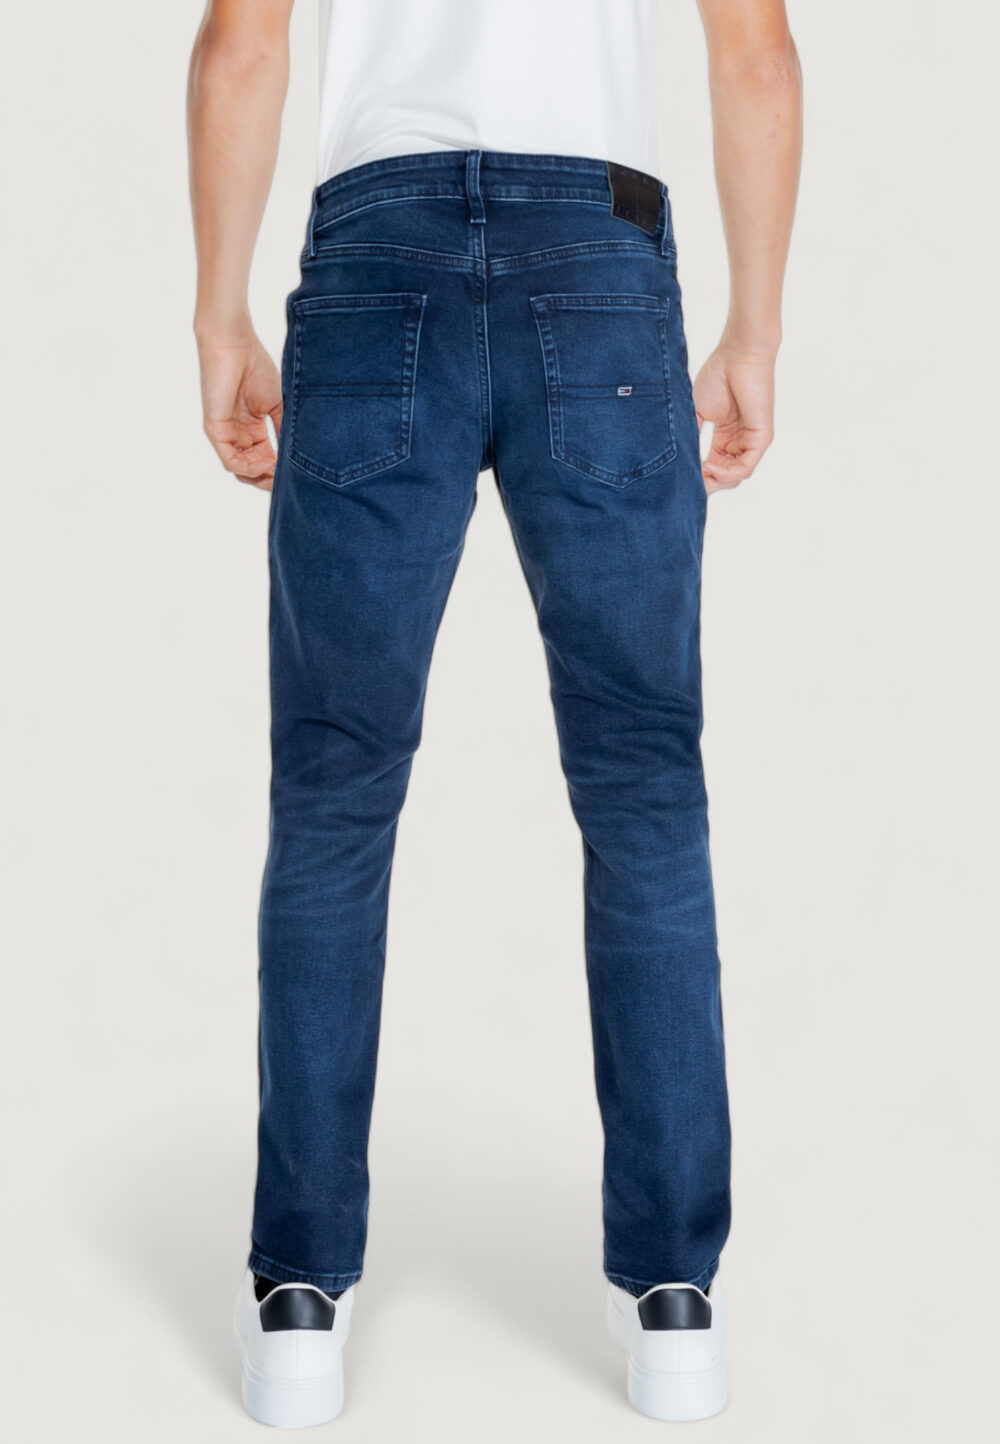 Jeans slim Tommy Hilfiger SCANTON CH1263 Denim scuro - Foto 2